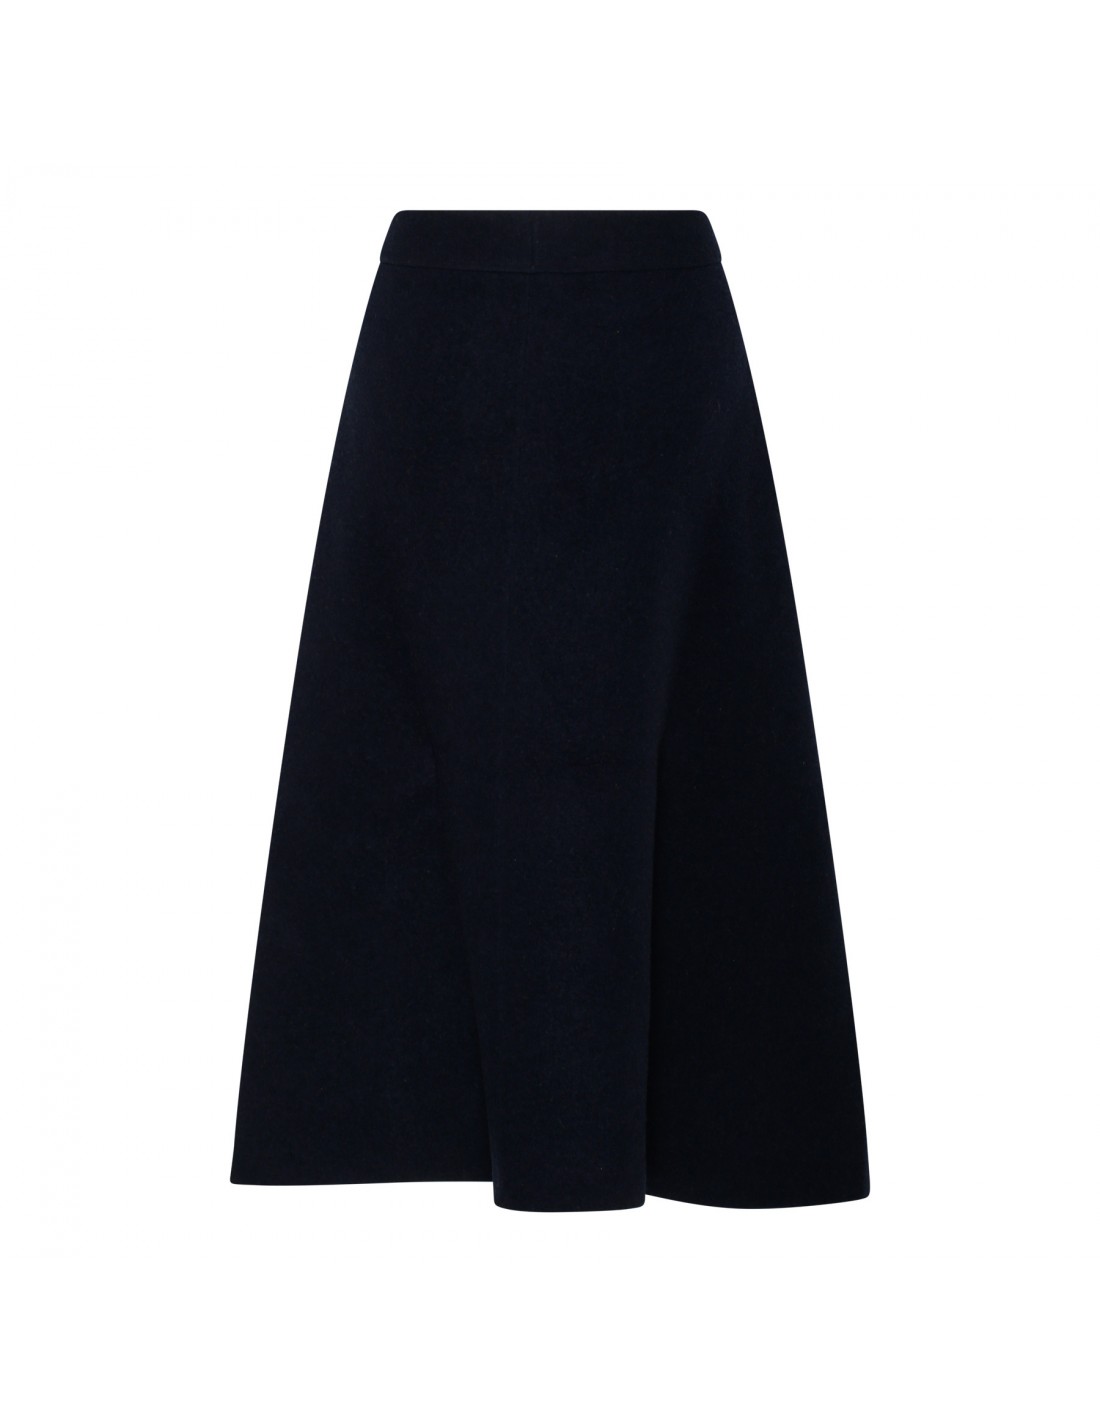 Blue knit virgin wool skirt